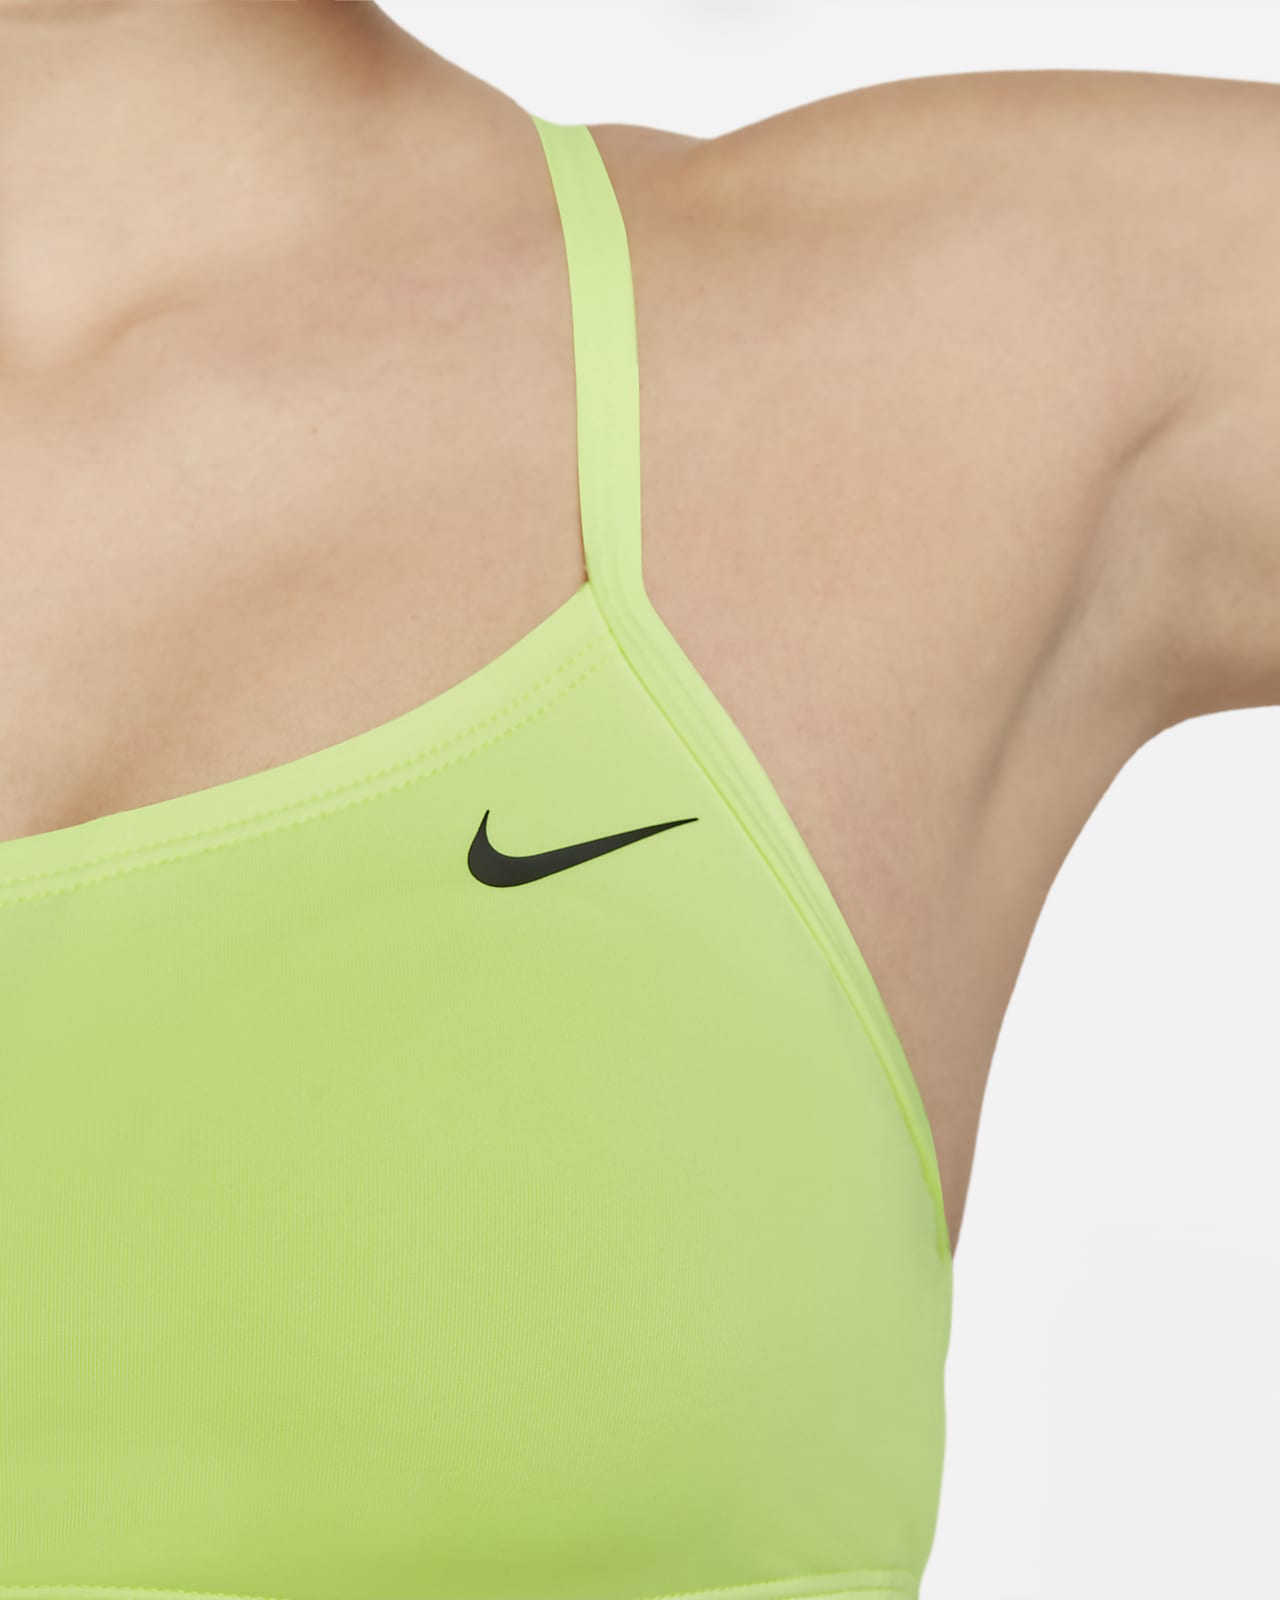 Nike Women's Bandeau Bikini Top. UK